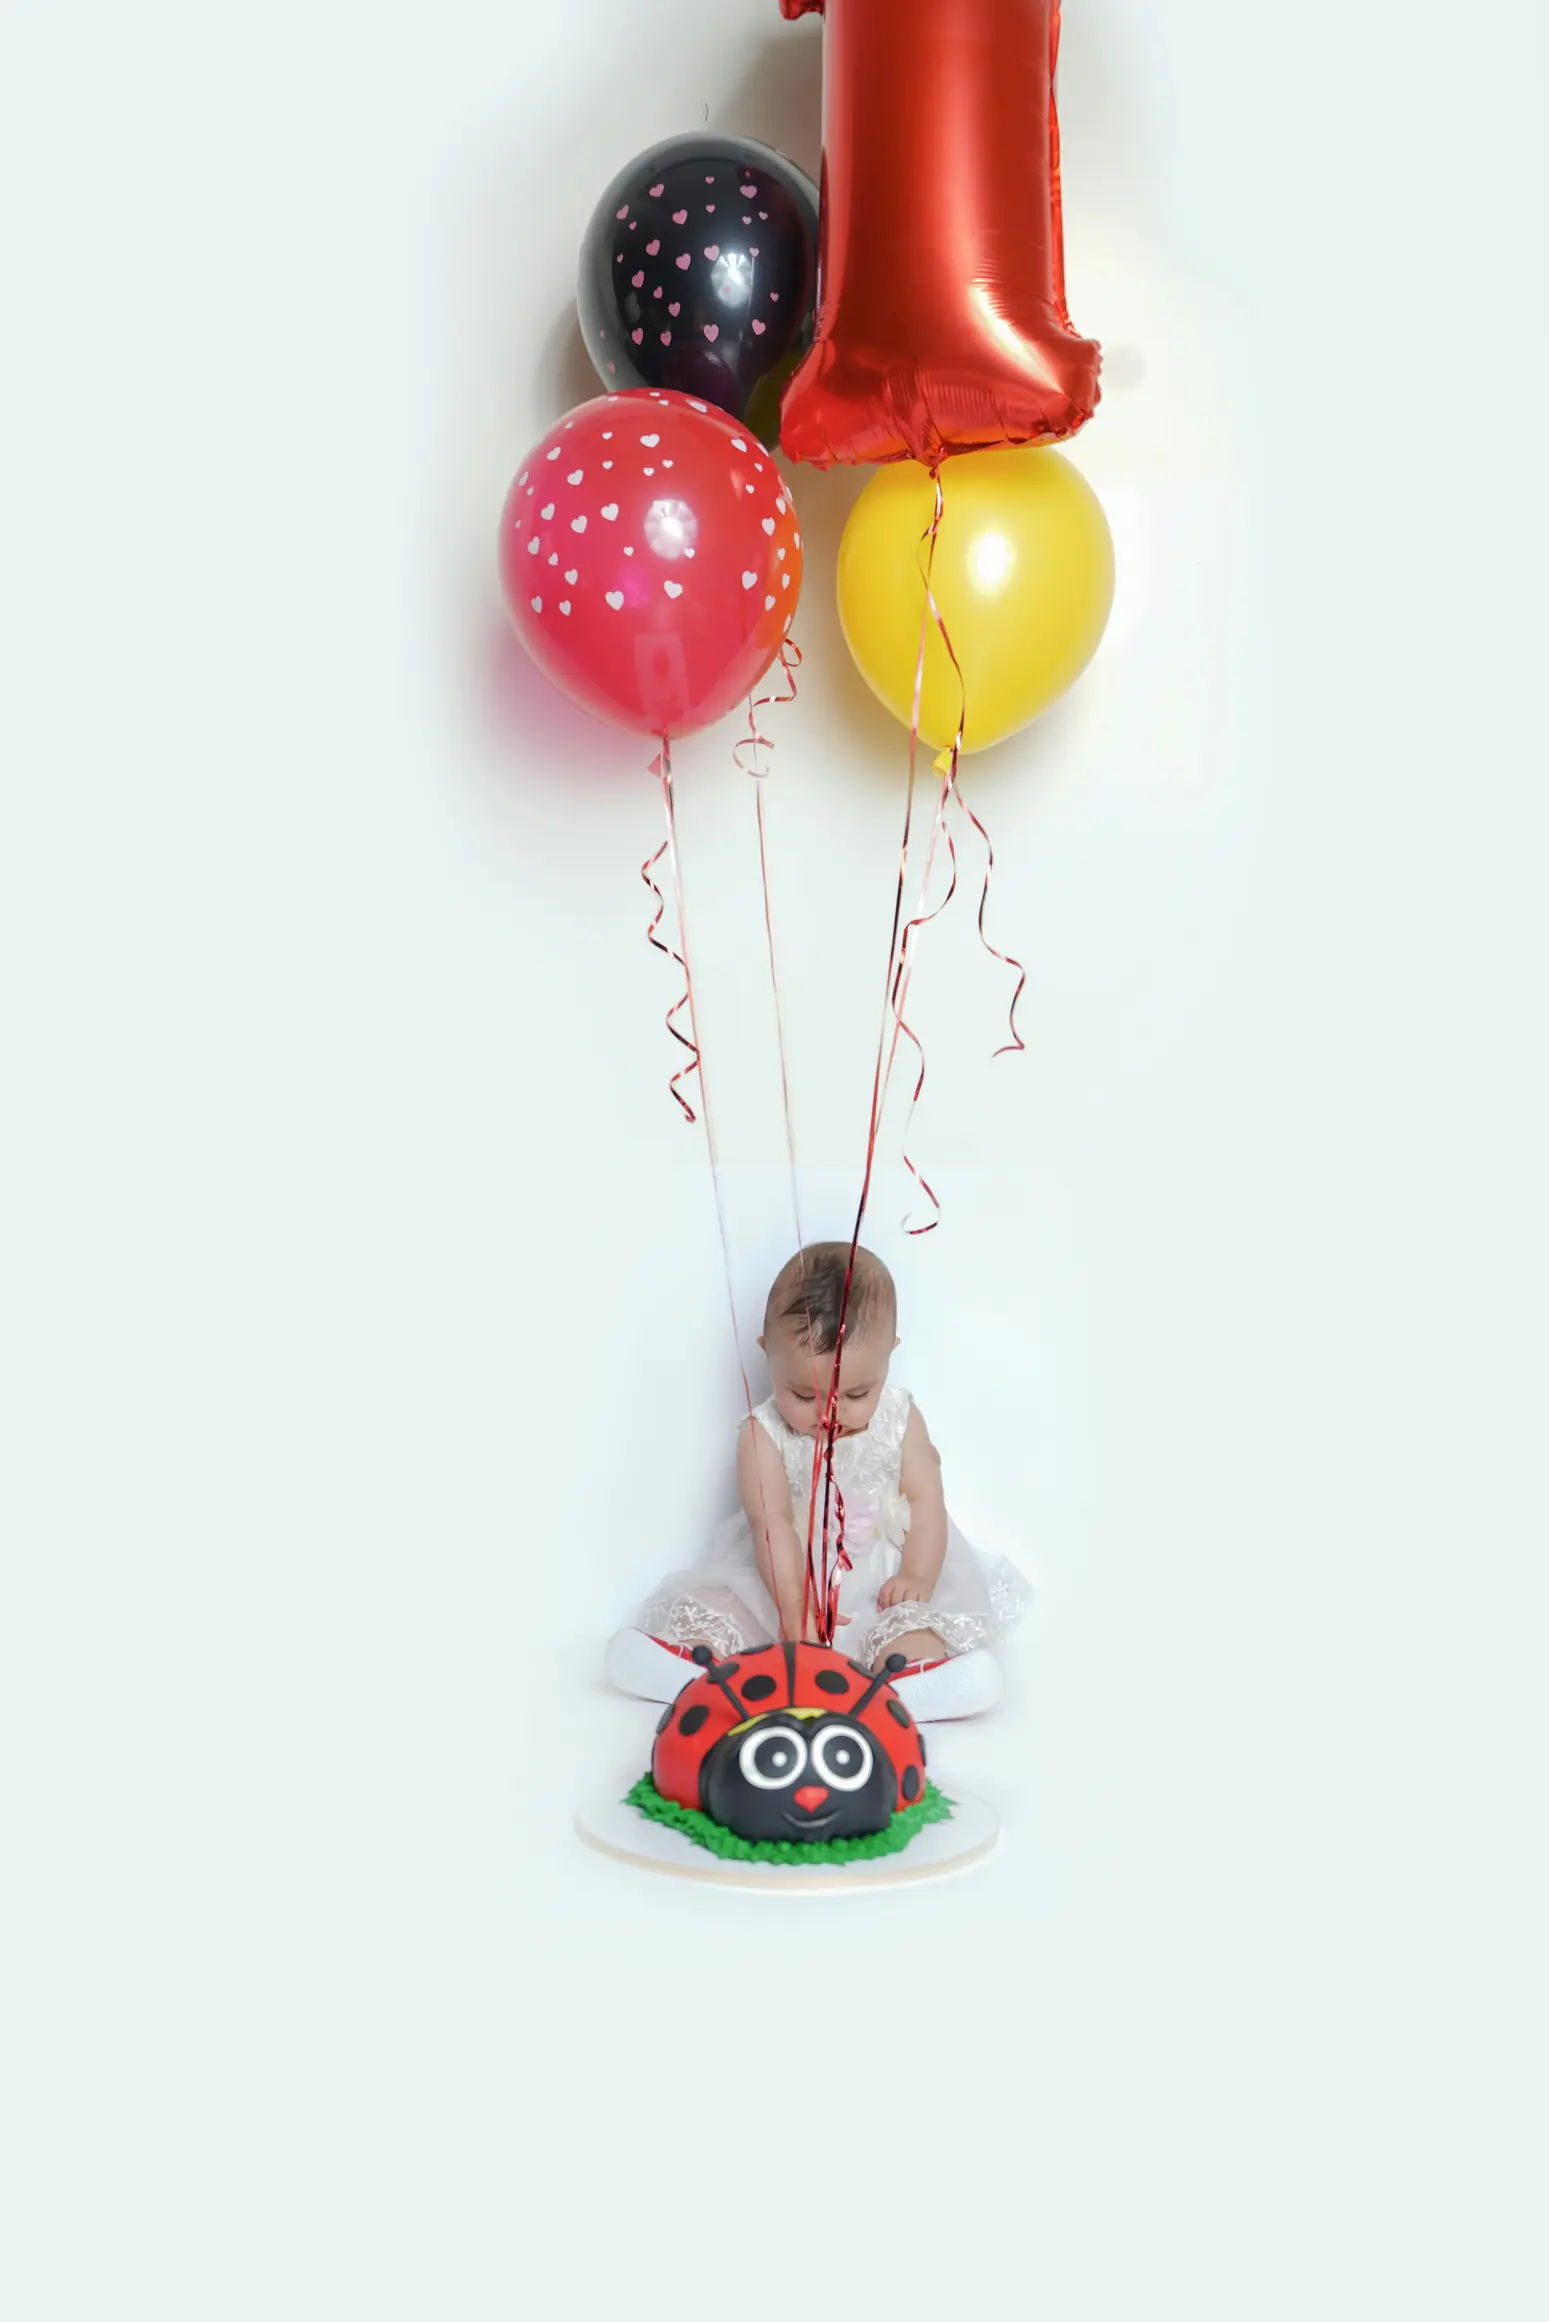 Ein kleines Kind erlebt seinen ersten Geburtstag, Spielzeug und Dekoration, ein Moment voller Freude und Liebe, festgehalten für die Ewigkeit.